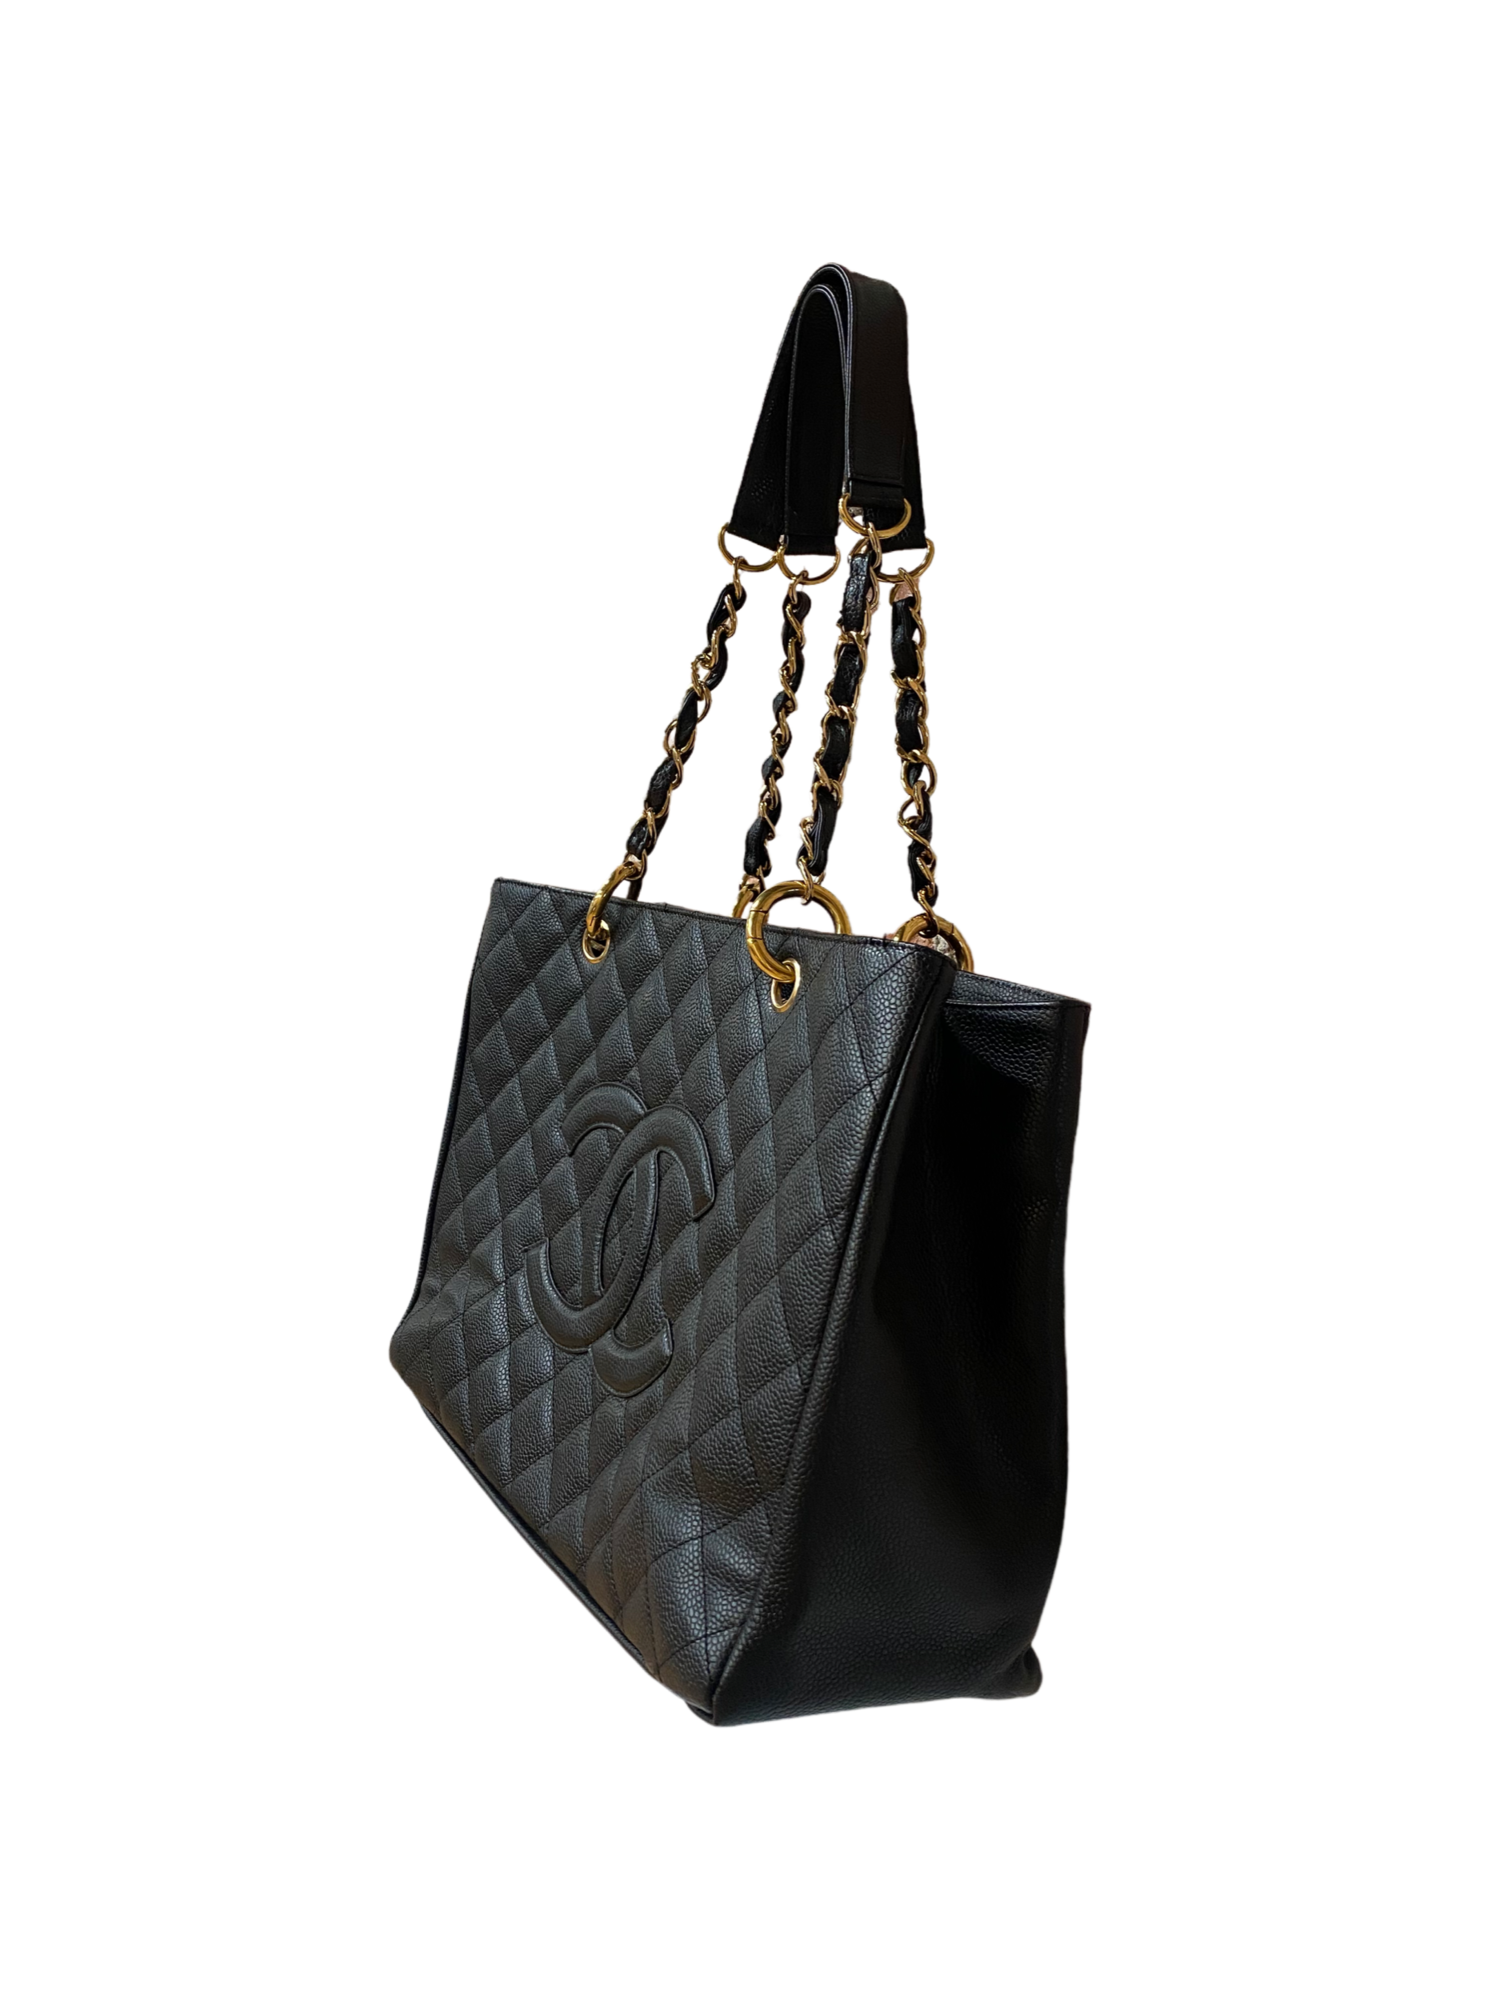 XL DIAMONDS Genuine Leather Shoulder Bag Quilted Elegant